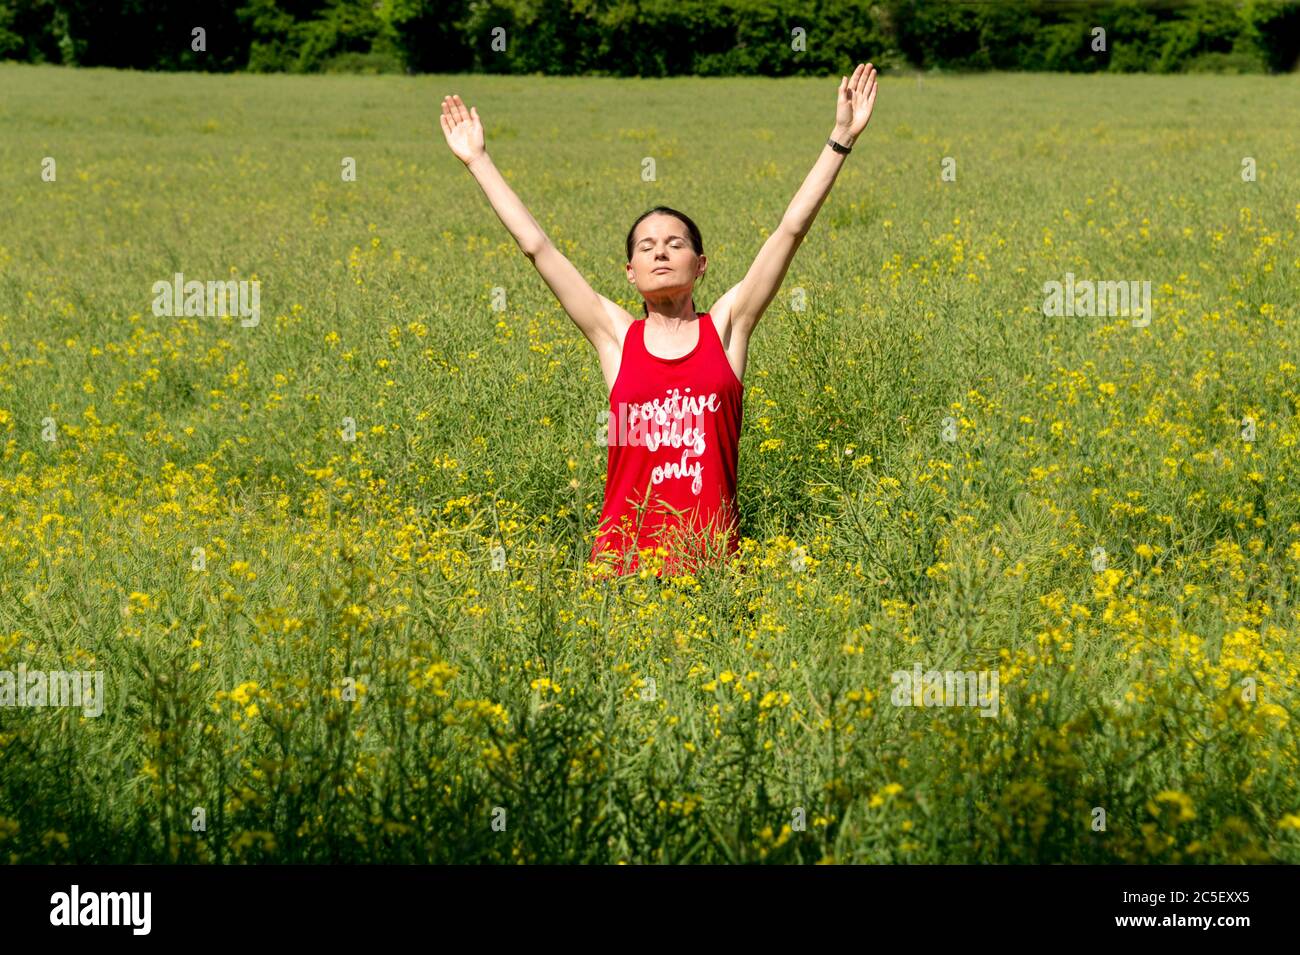 Una joven en una camiseta roja con los brazos levantados hasta el cielo, celebrando la libertad. Vibraciones positivas escritas solo en la camiseta Foto de stock